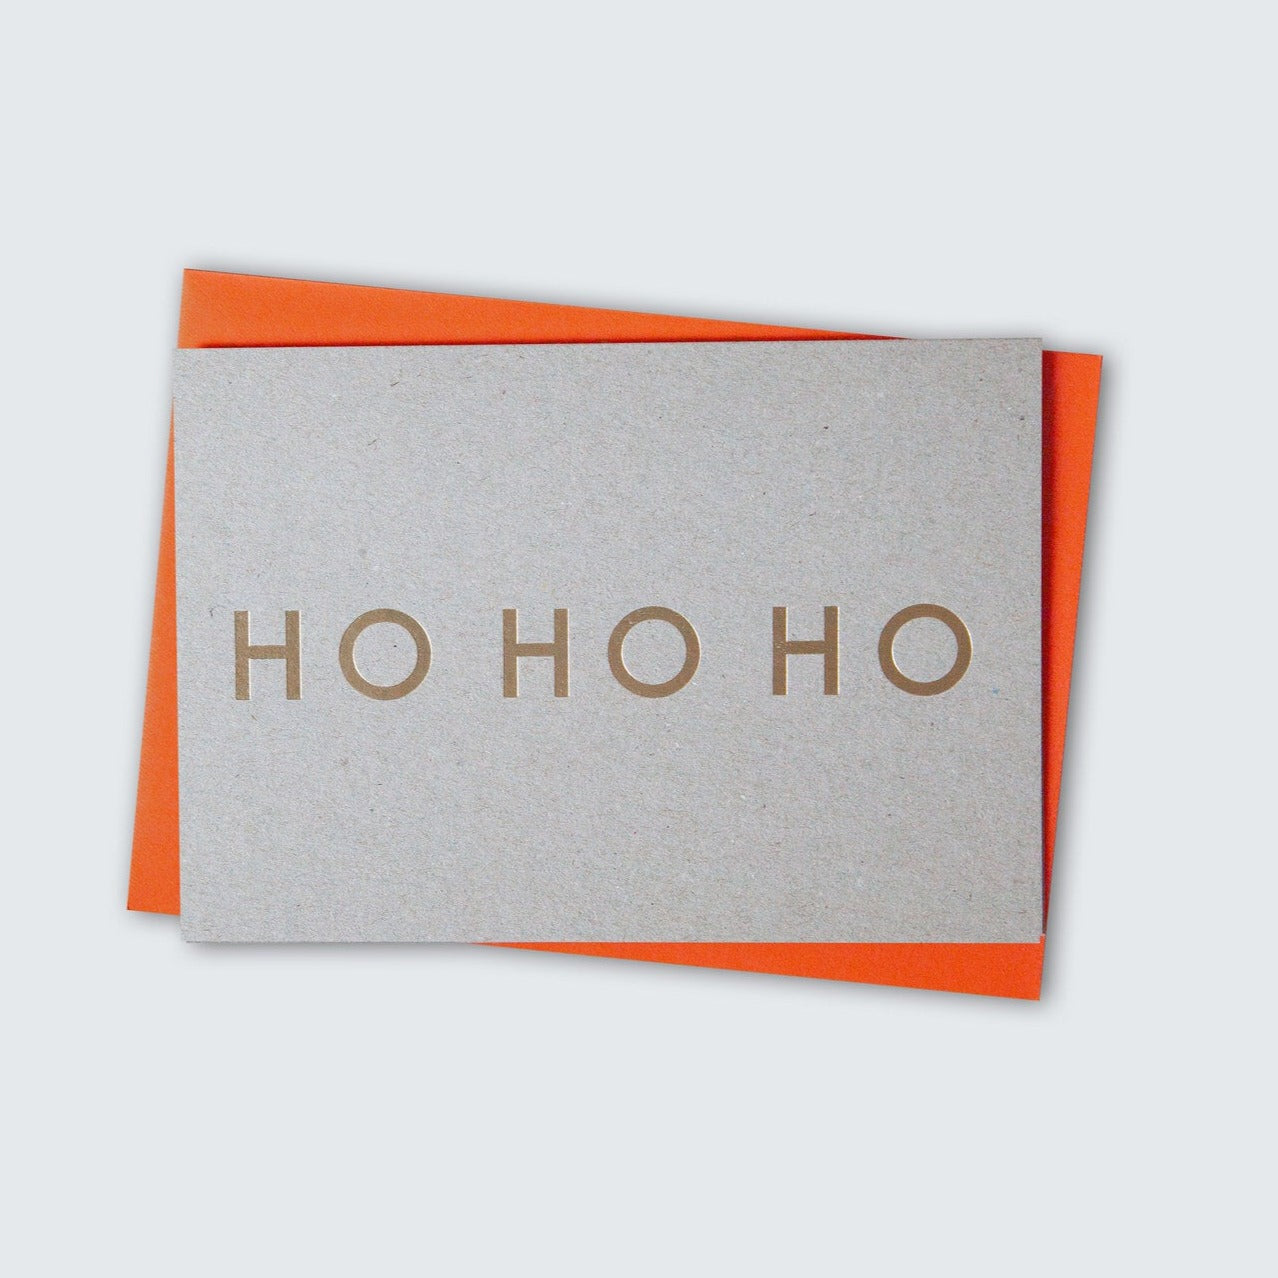 Картичка Hohoho - Brass on Recycled Grey